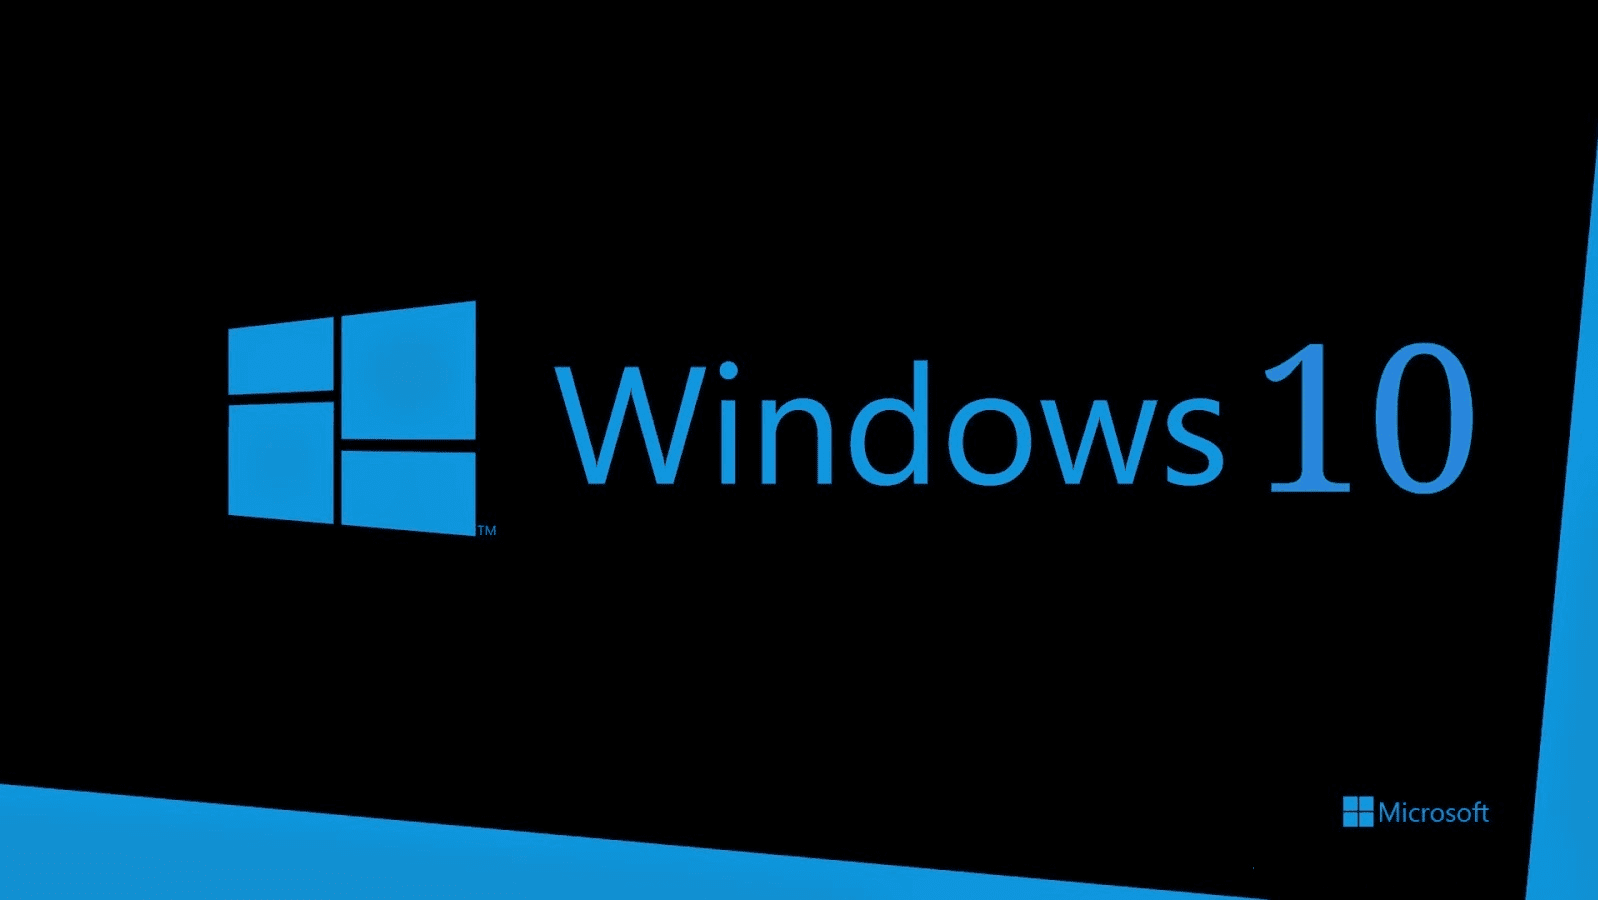 Windows 10 es el mejor S.O para jugar según Microsoft